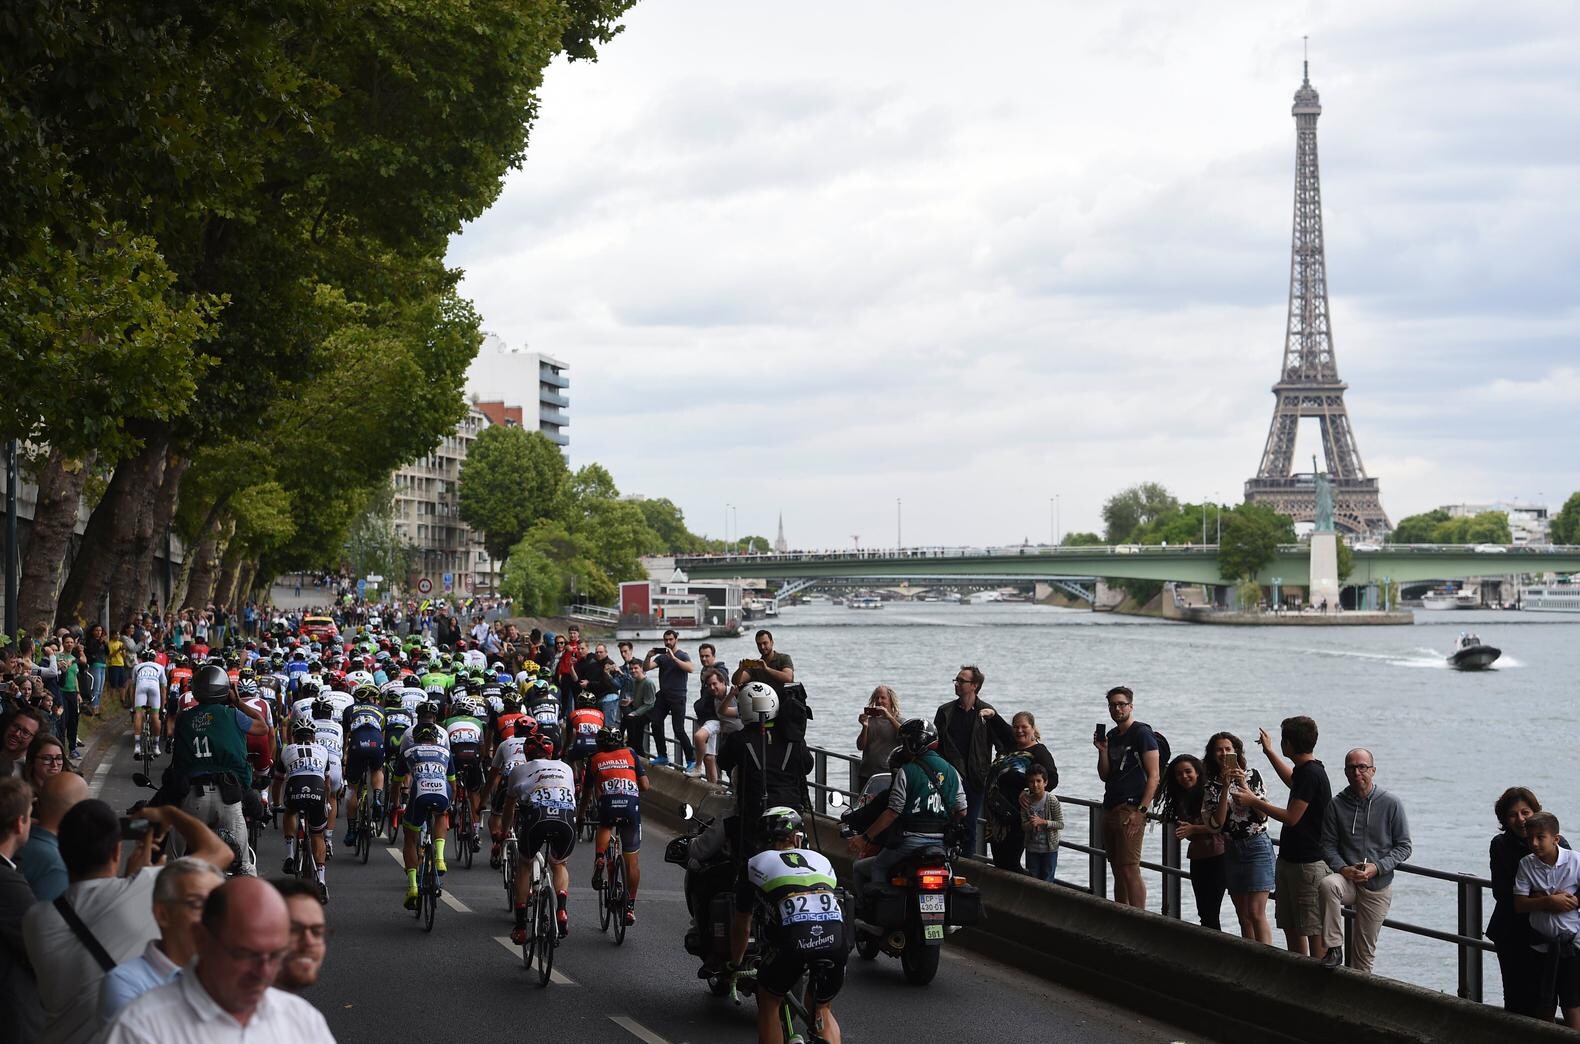 Teruglezen Tour - Machtige Groenewegen wint op Champs-Élysées: 'Sprint duurde eeuwigheid'